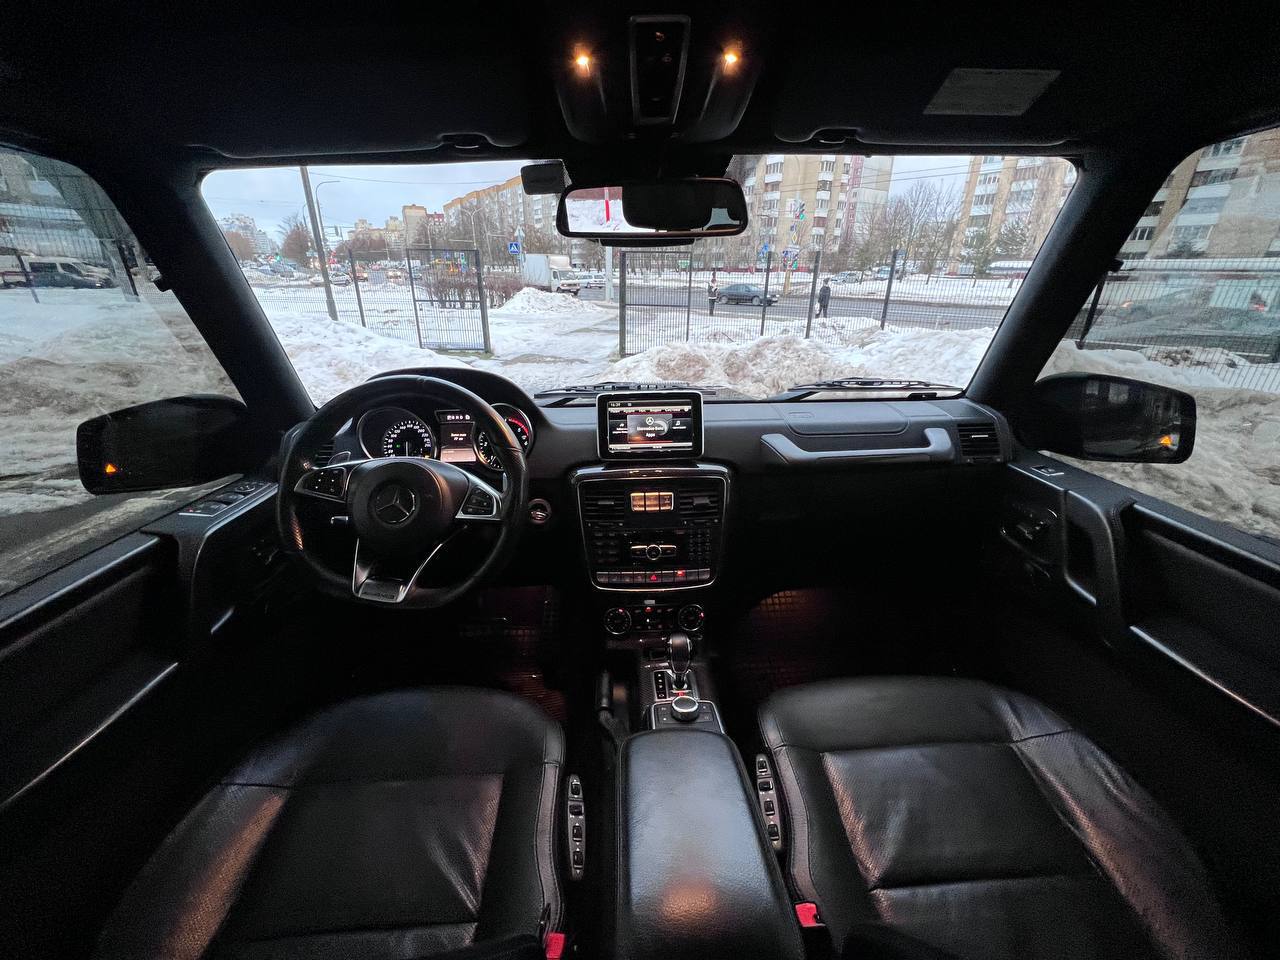 Аренда  Mercedes Benz G-Class BRABUS 4WD  6 класса 2014 года в городе Минск от 295 $/сутки,  двигатель: ДТ , объем 3.5 литров, КАСКО (Мультидрайв), без водителя, вид 3 - West Group